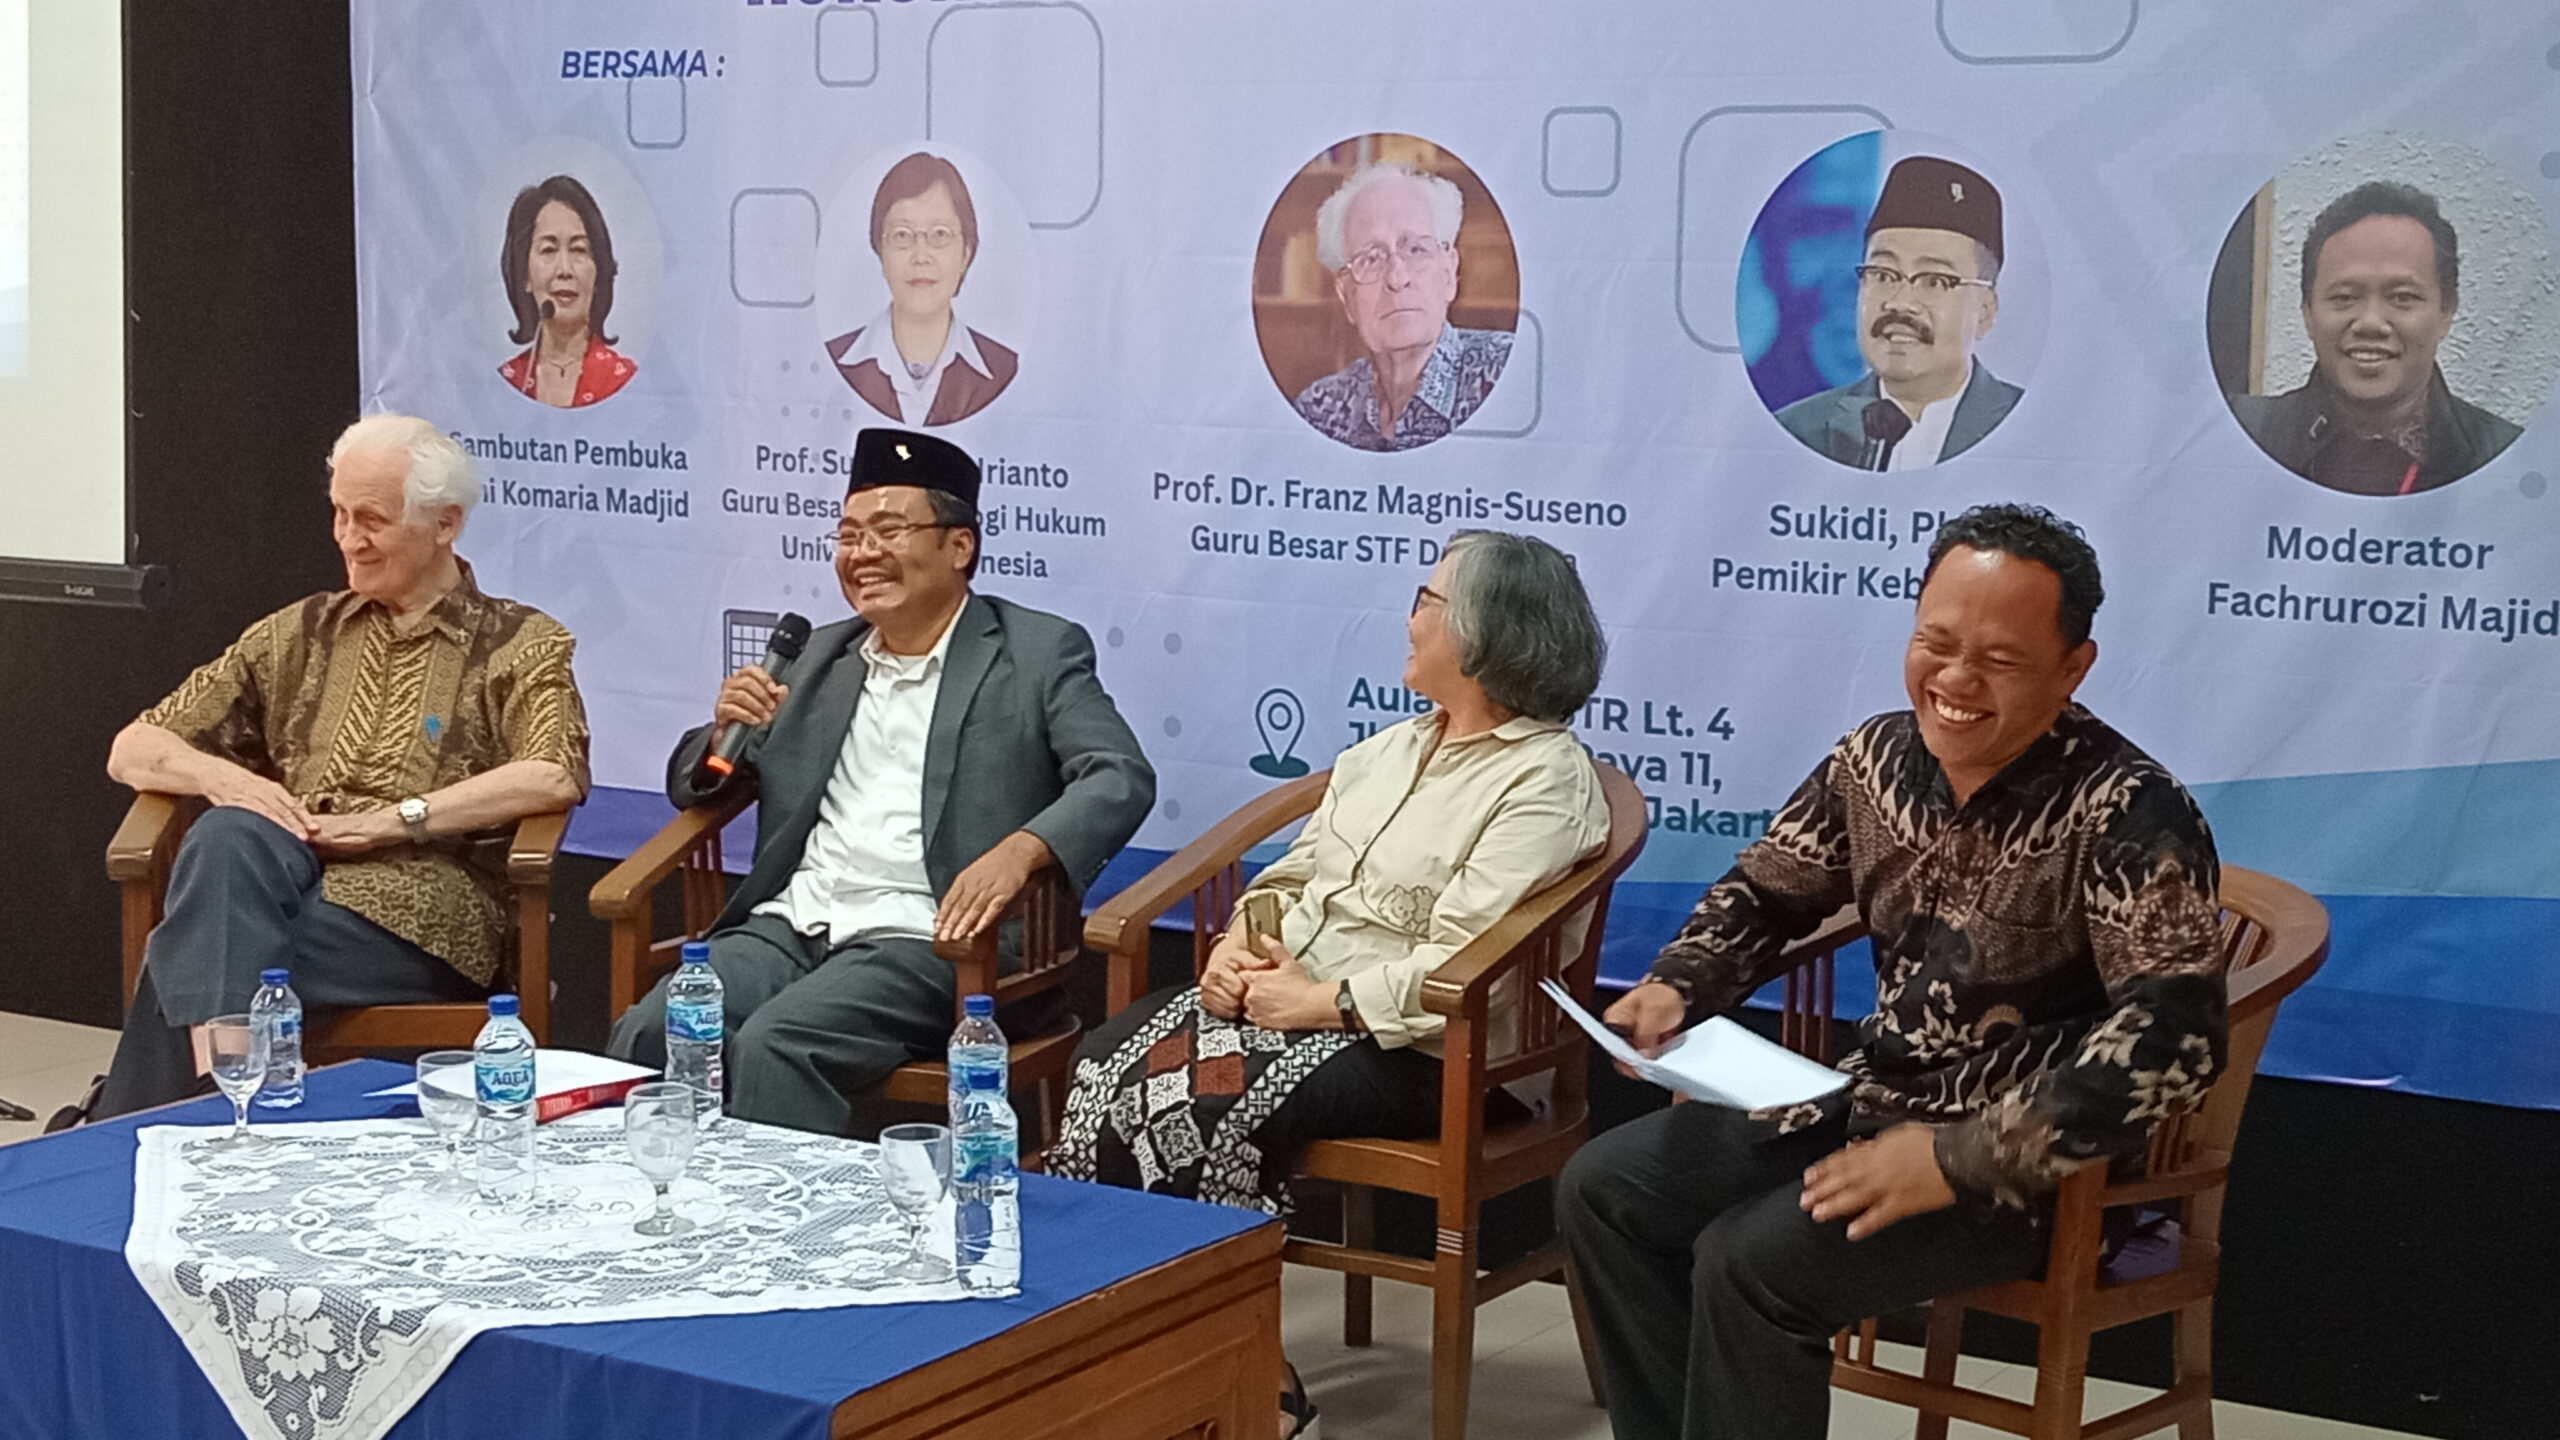 Dari Kasus Hasto, Penegakan Hukum Tebang Pilih Bisa Merusak Demokrasi Indonesia